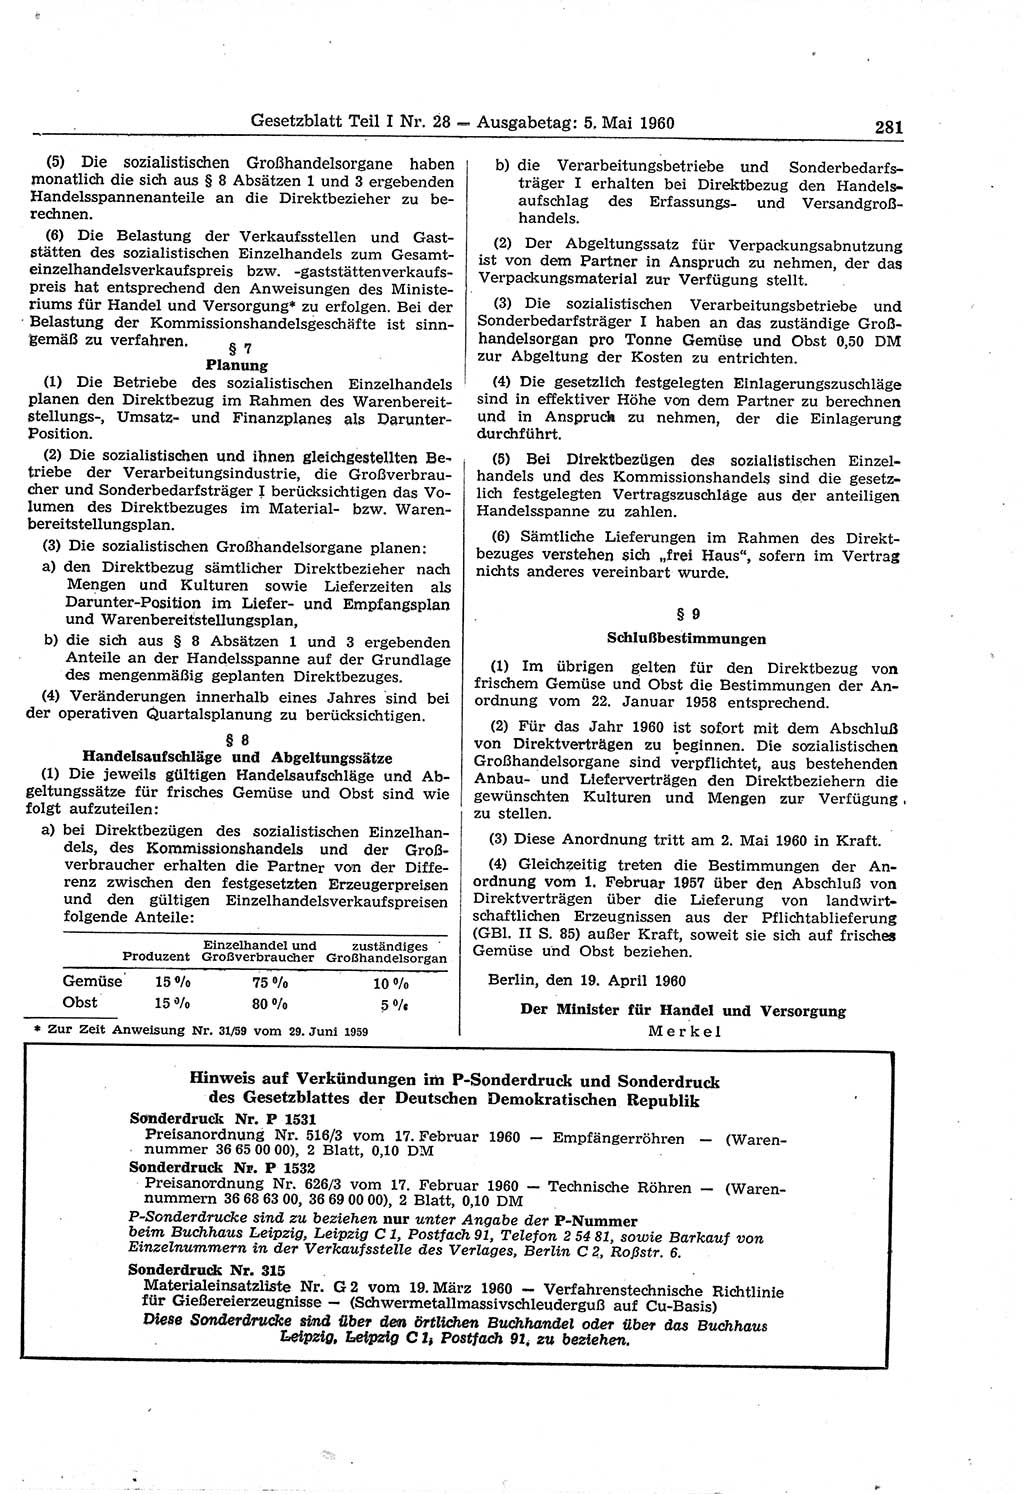 Gesetzblatt (GBl.) der Deutschen Demokratischen Republik (DDR) Teil Ⅰ 1960, Seite 281 (GBl. DDR Ⅰ 1960, S. 281)